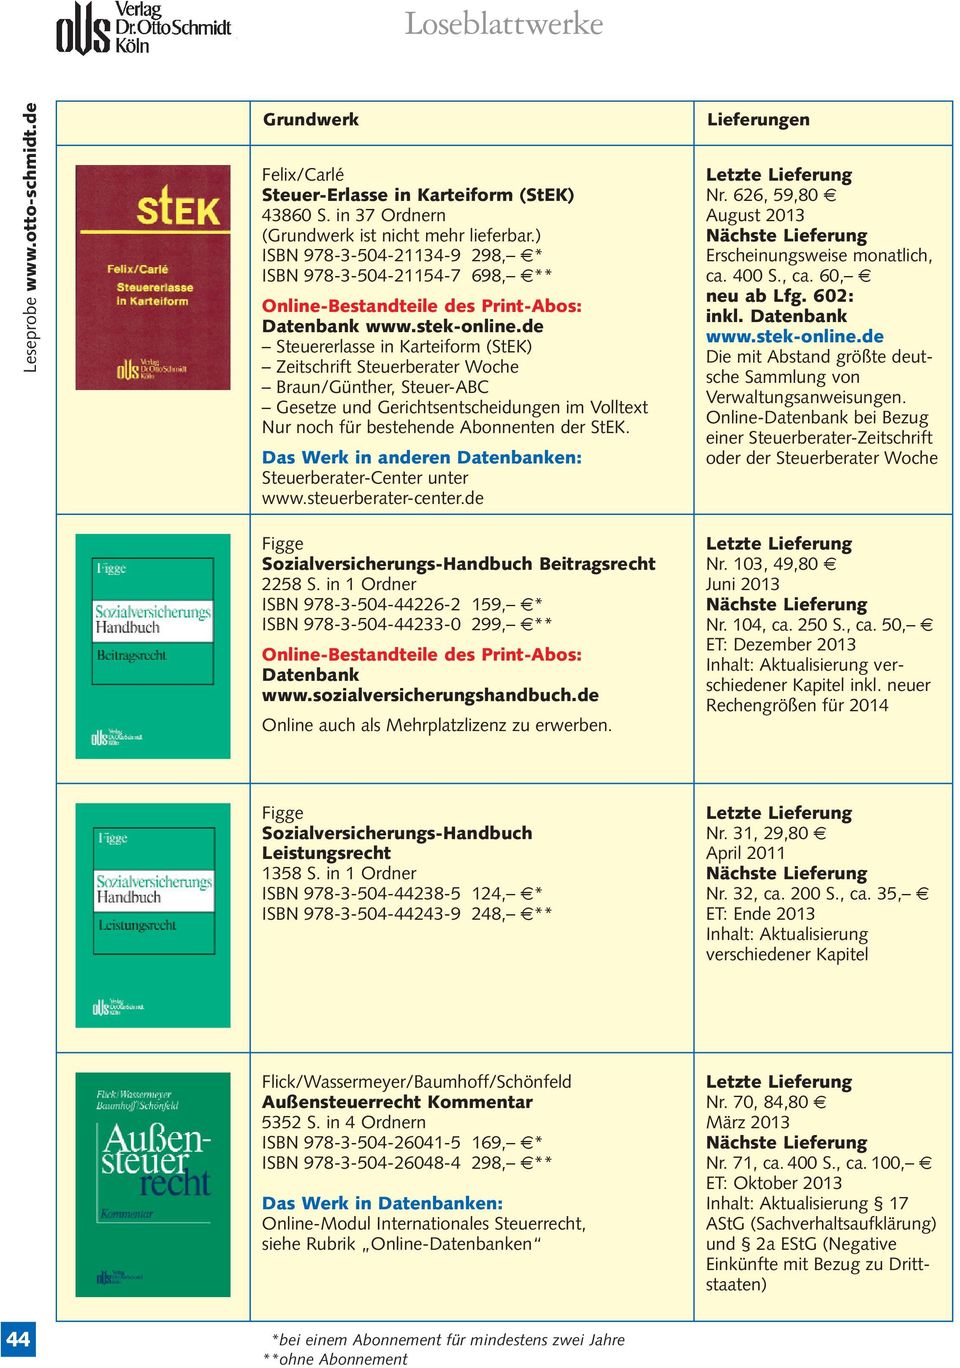 Steuerberater-Center unter www.steuerberater-center.de Nr. 626, 59,80 7 Erscheinungsweise monatlich, ca. 400 S., ca. 60, 7 neu ab Lfg. 602: inkl. Datenbank www.stek-online.